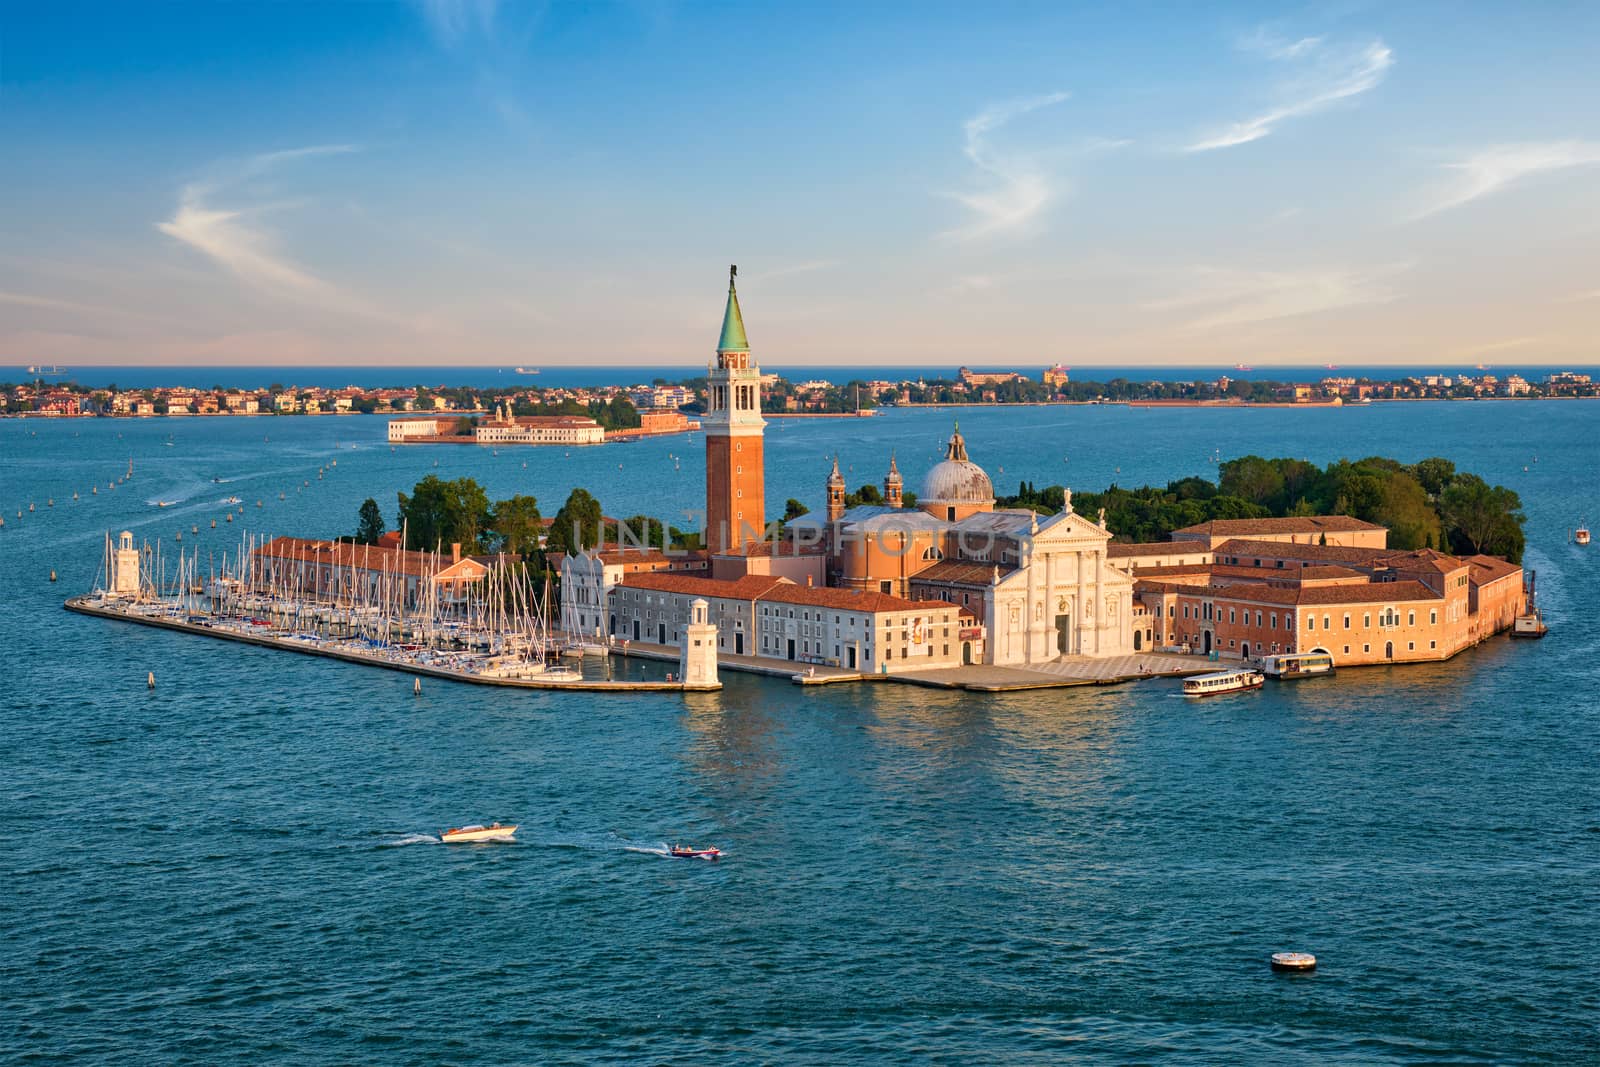 Aerial view of Venice lagoon with boats and San Giorgio di Maggiore church. Venice, Italy by dimol